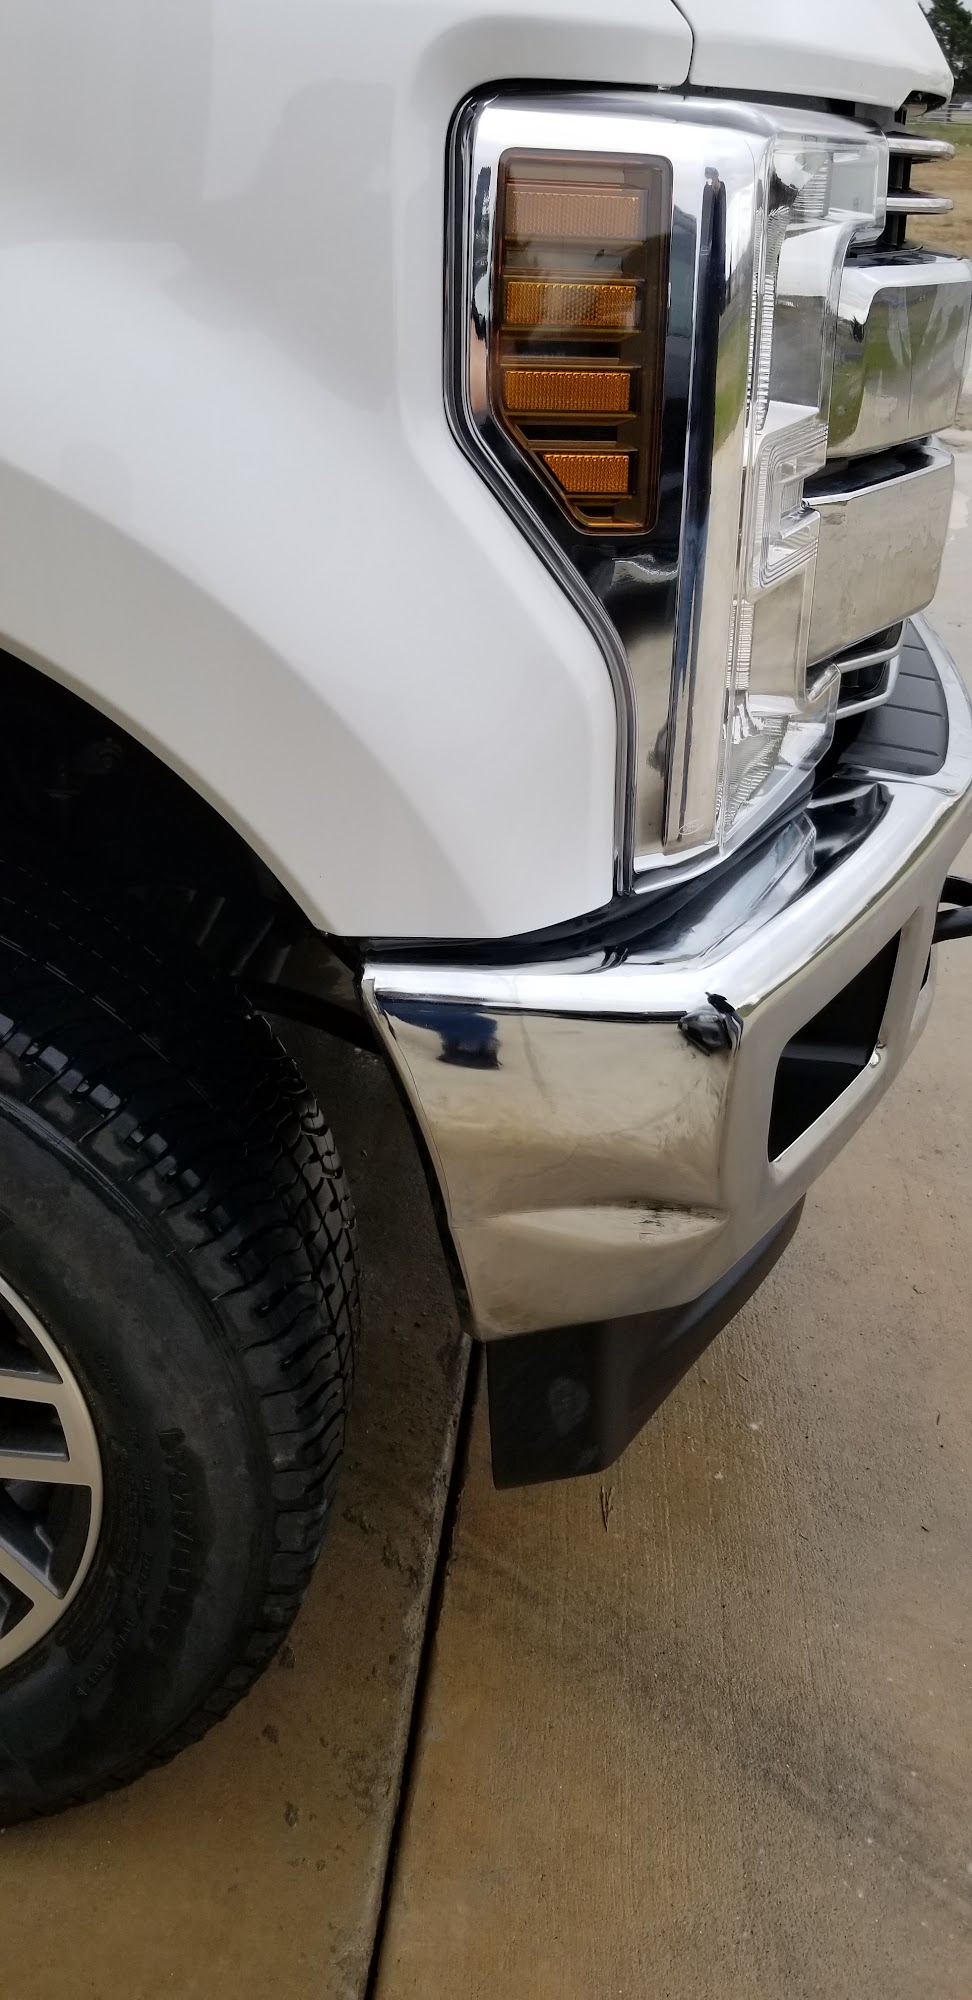 National Auto Collision of Whitesboro